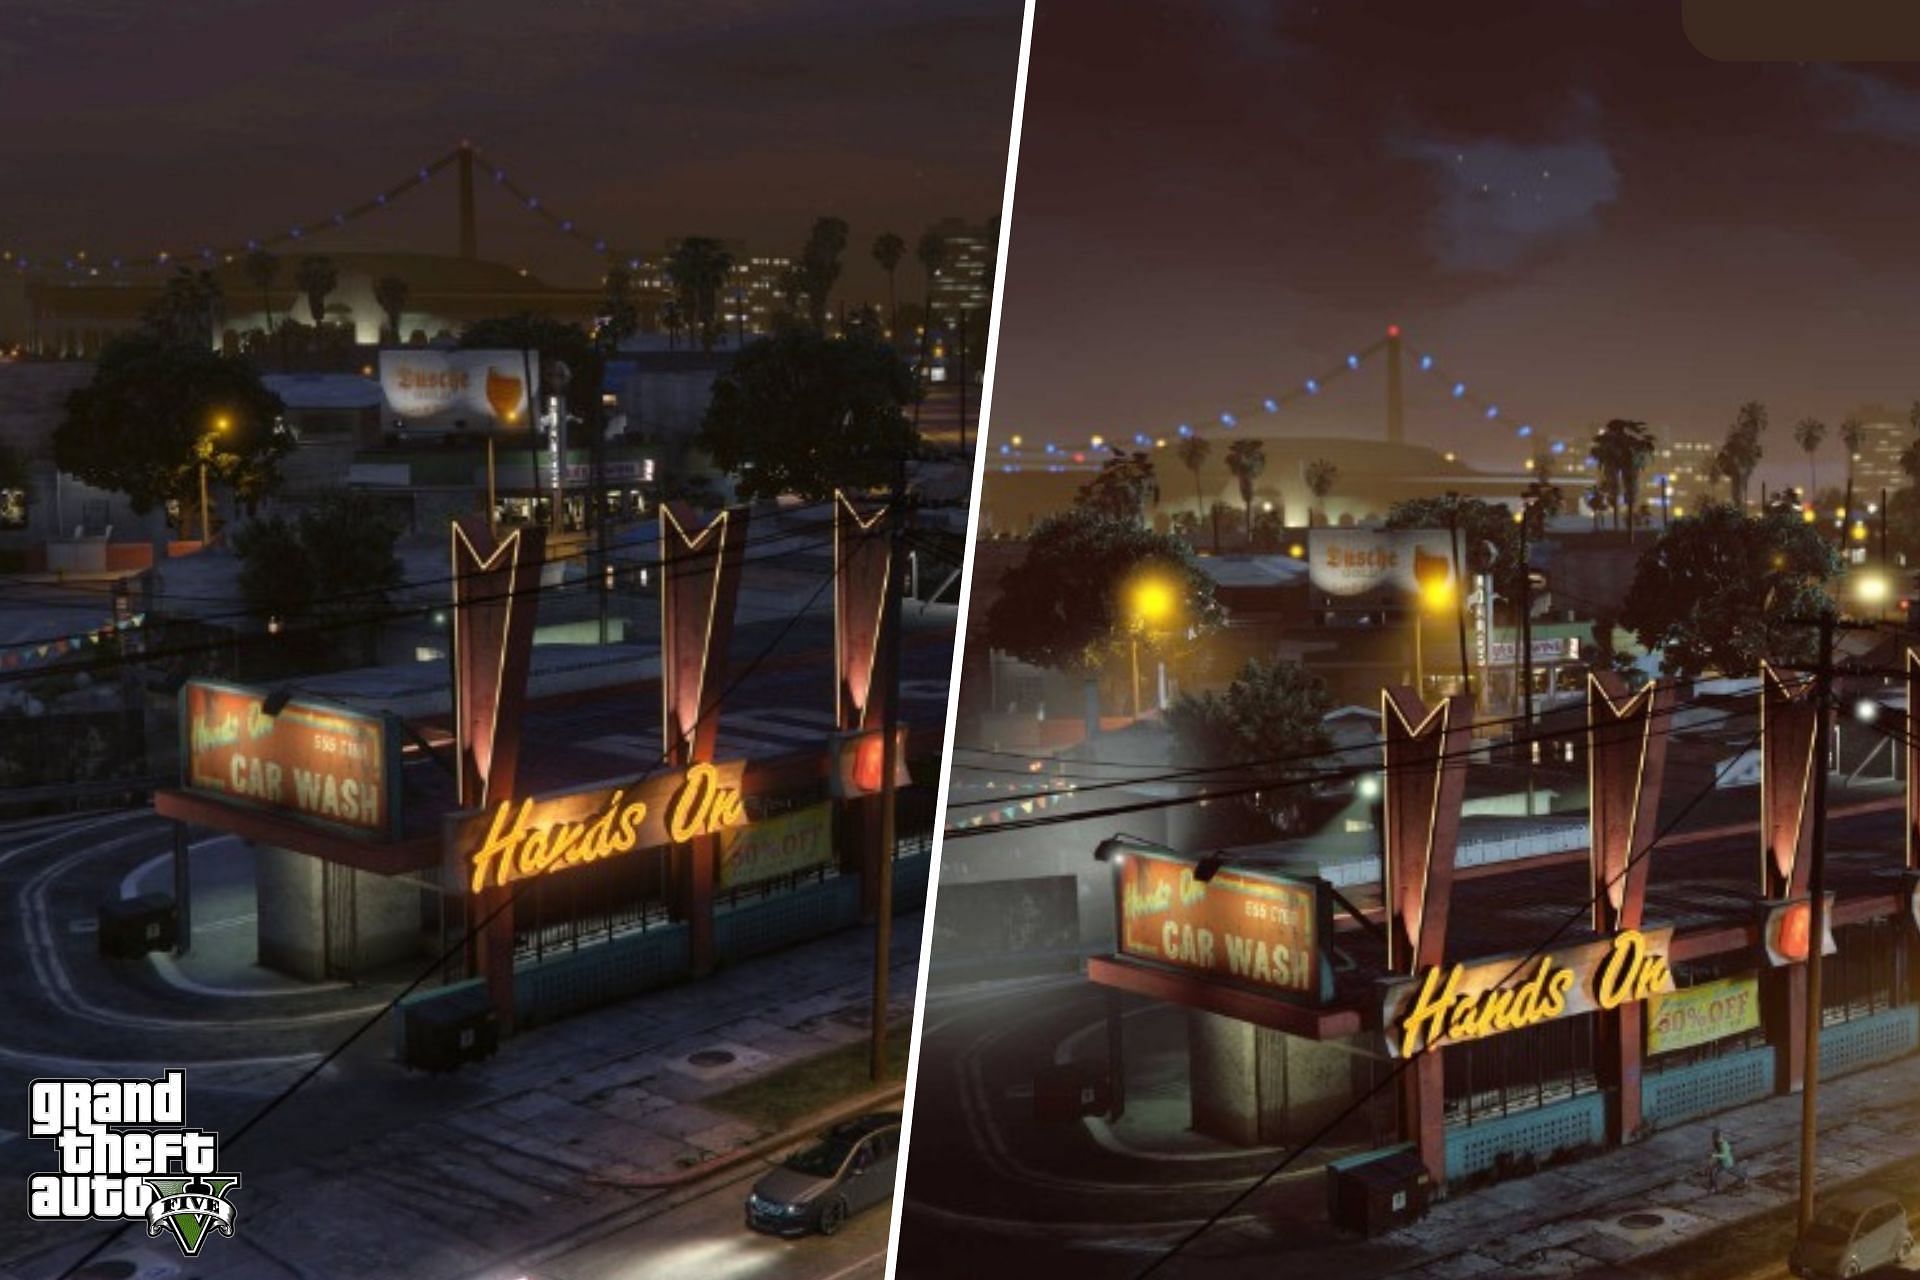 Grand Theft Auto 5 - PC Max vs PS5/Xbox Series X Comparison Screenshots